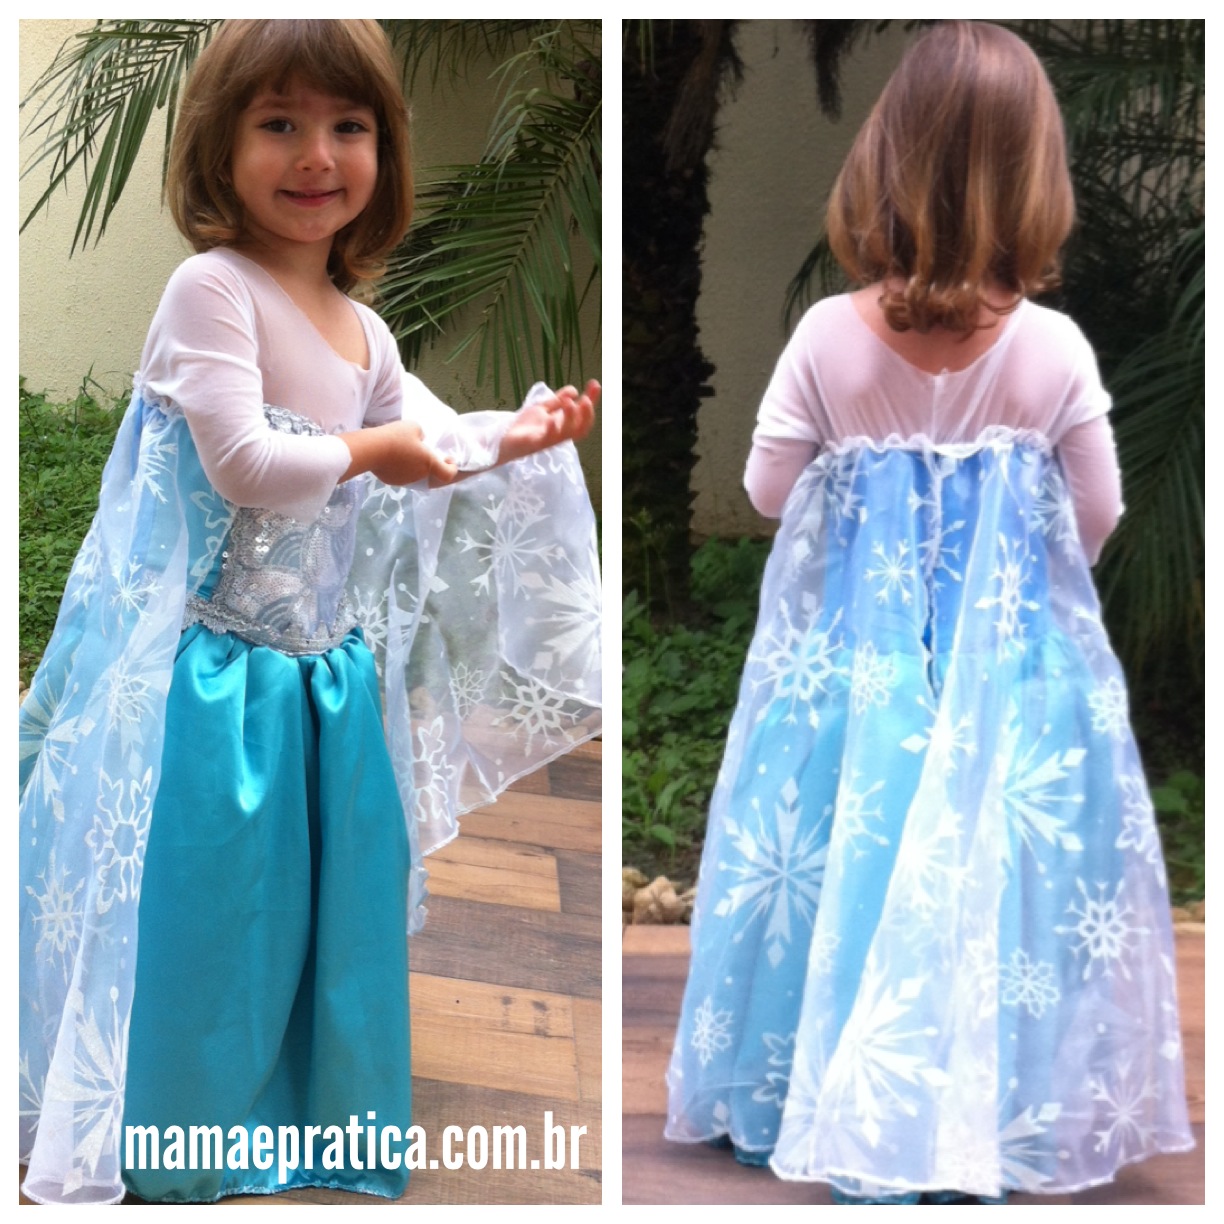 Manu mostrando a capa de seu vestido da Elsa